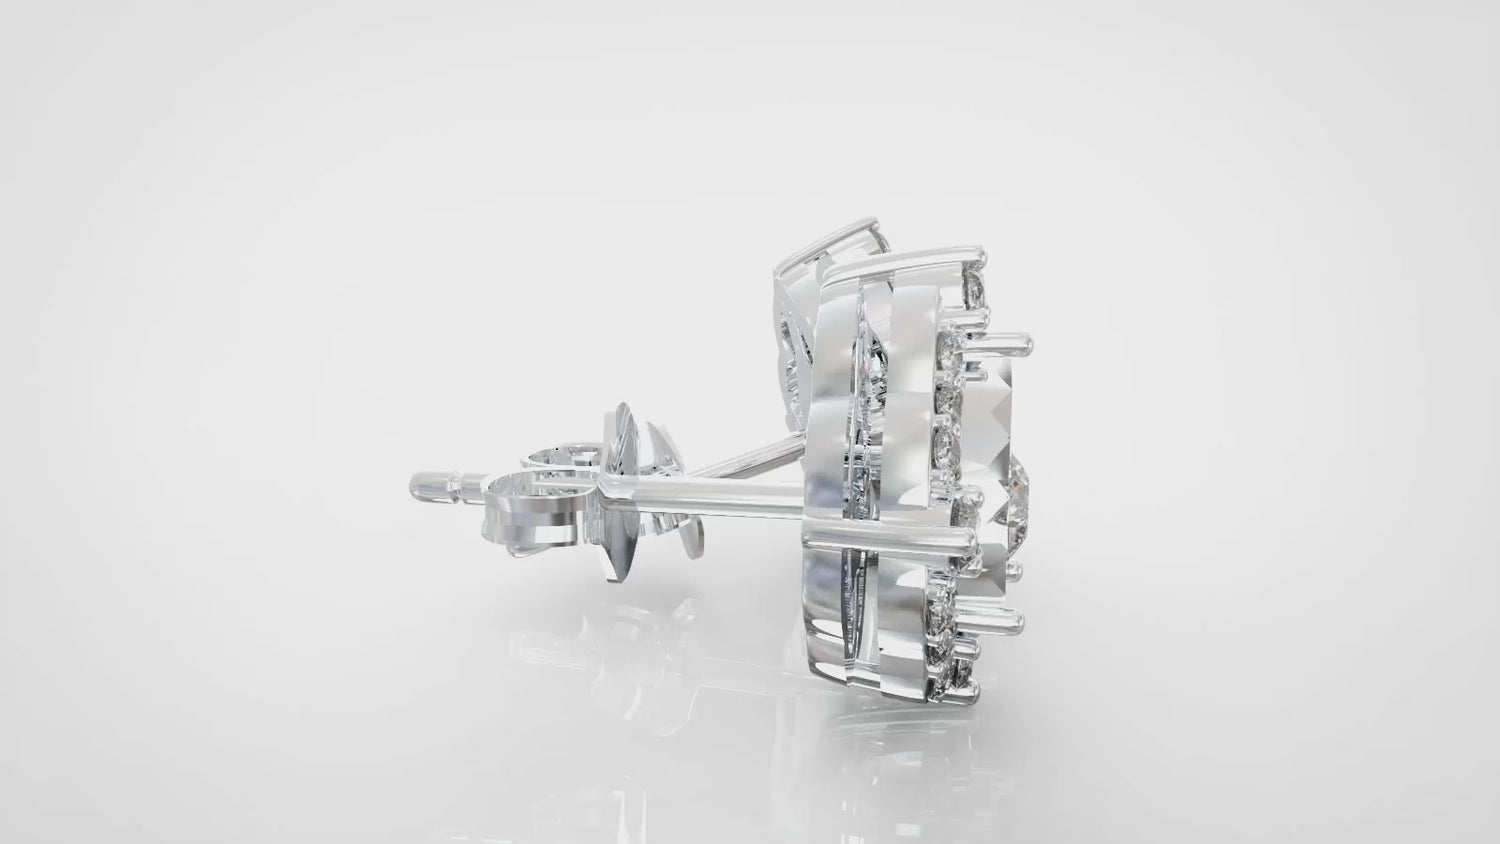 Set of 2 : 3/10CT TW Diamond Teardrop Pear Cluster Pendant & Earrings in Sterling Silver